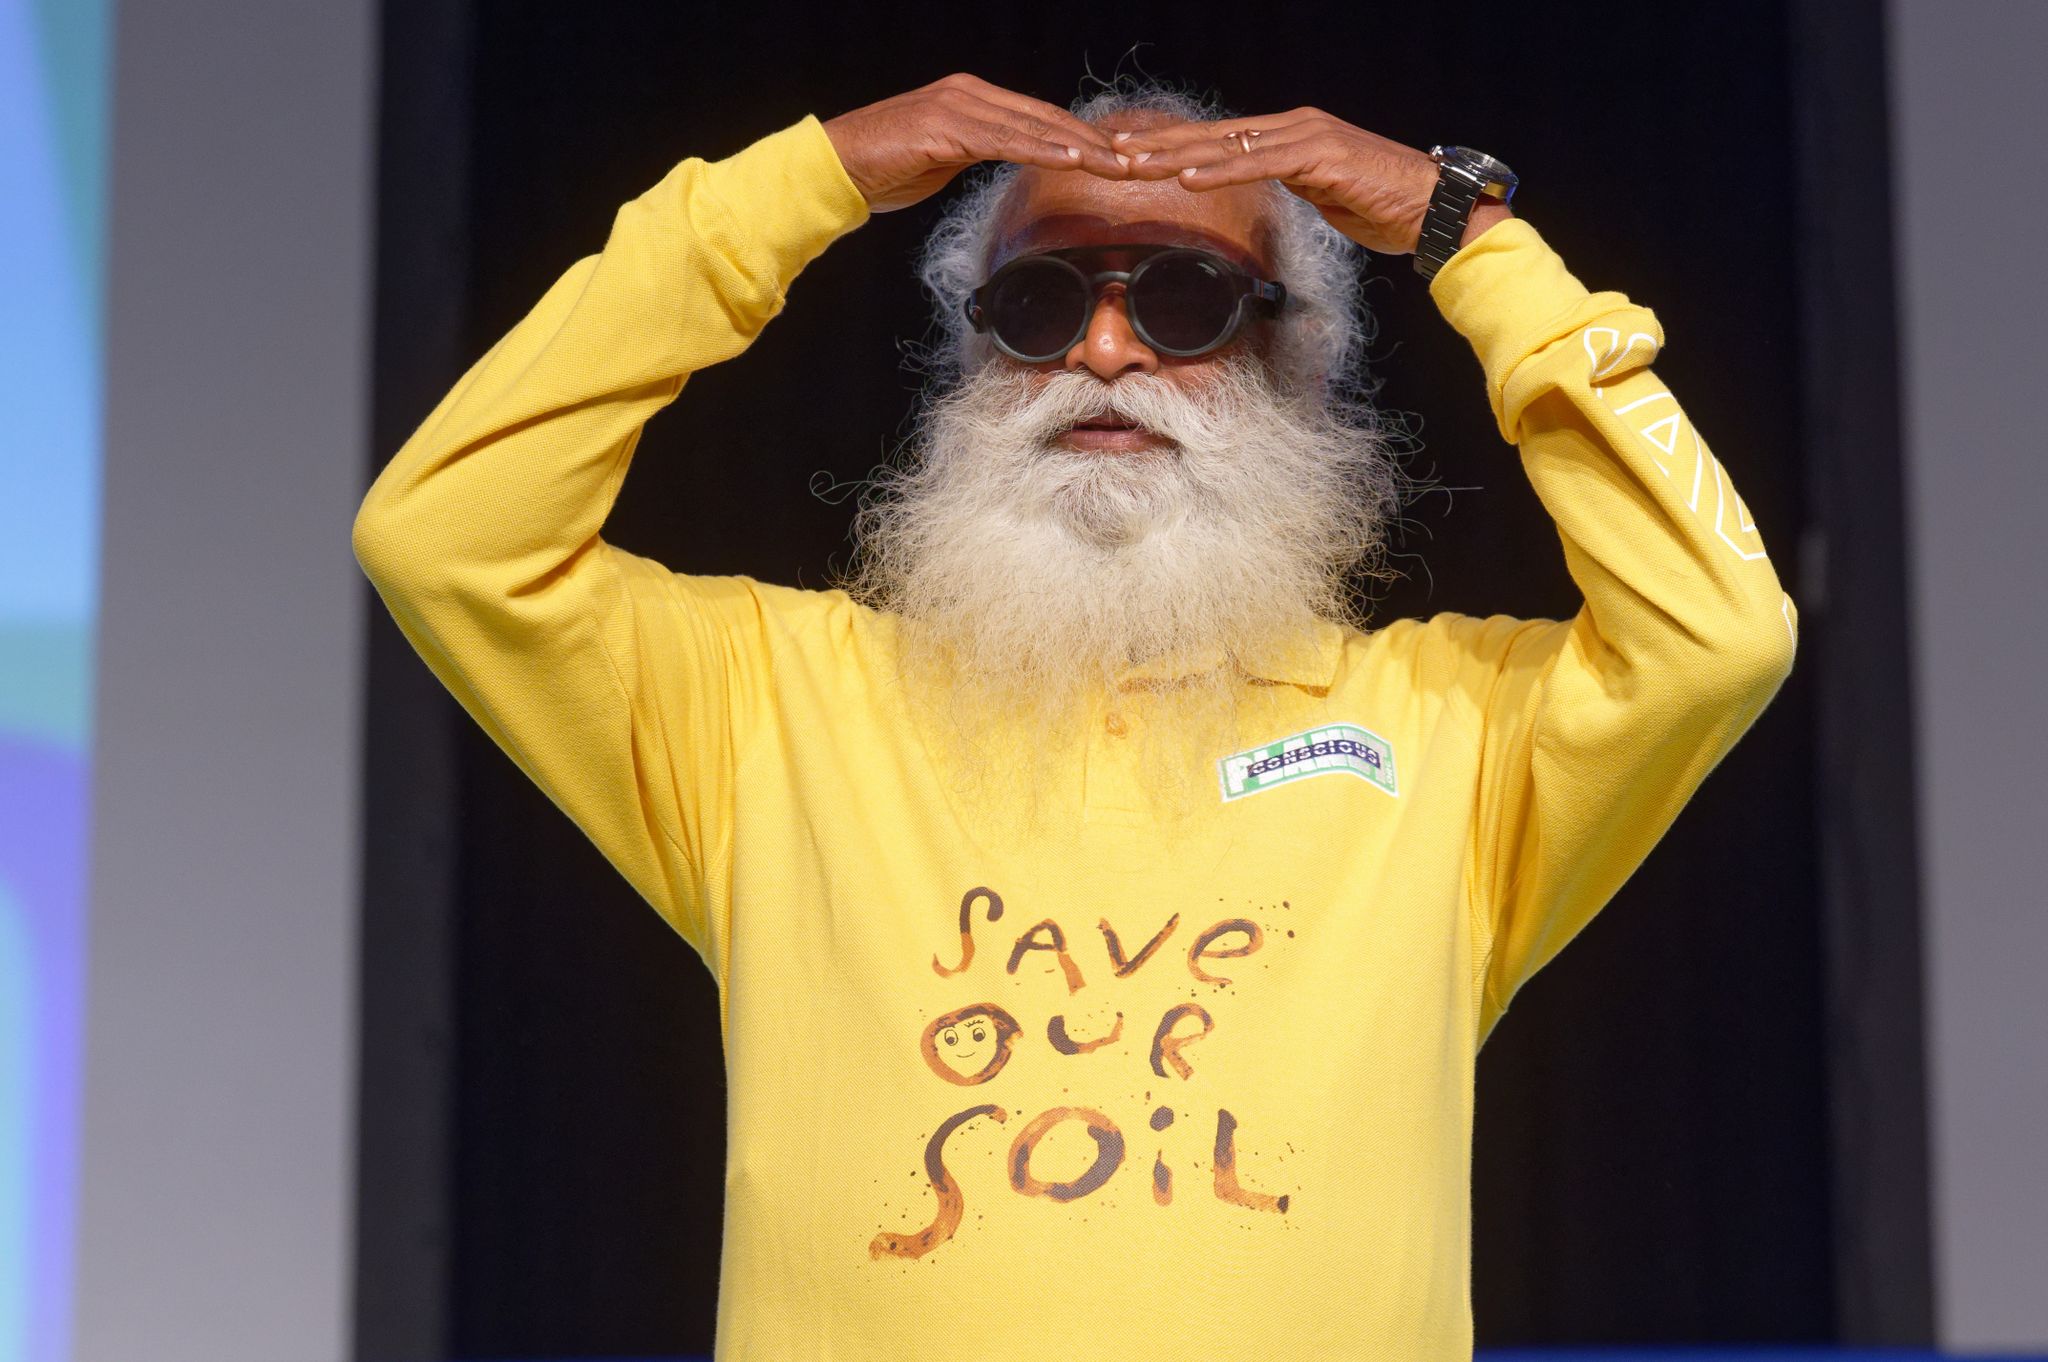 El activista ambiental indio Sadhguru habla en un evento de su campaña "Salvemos nuestro suelo", en la etapa alemana de su recorrido de 100 días en moto desde el Reino Unido hasta la India. Foto: Henning Kaiser/dpa